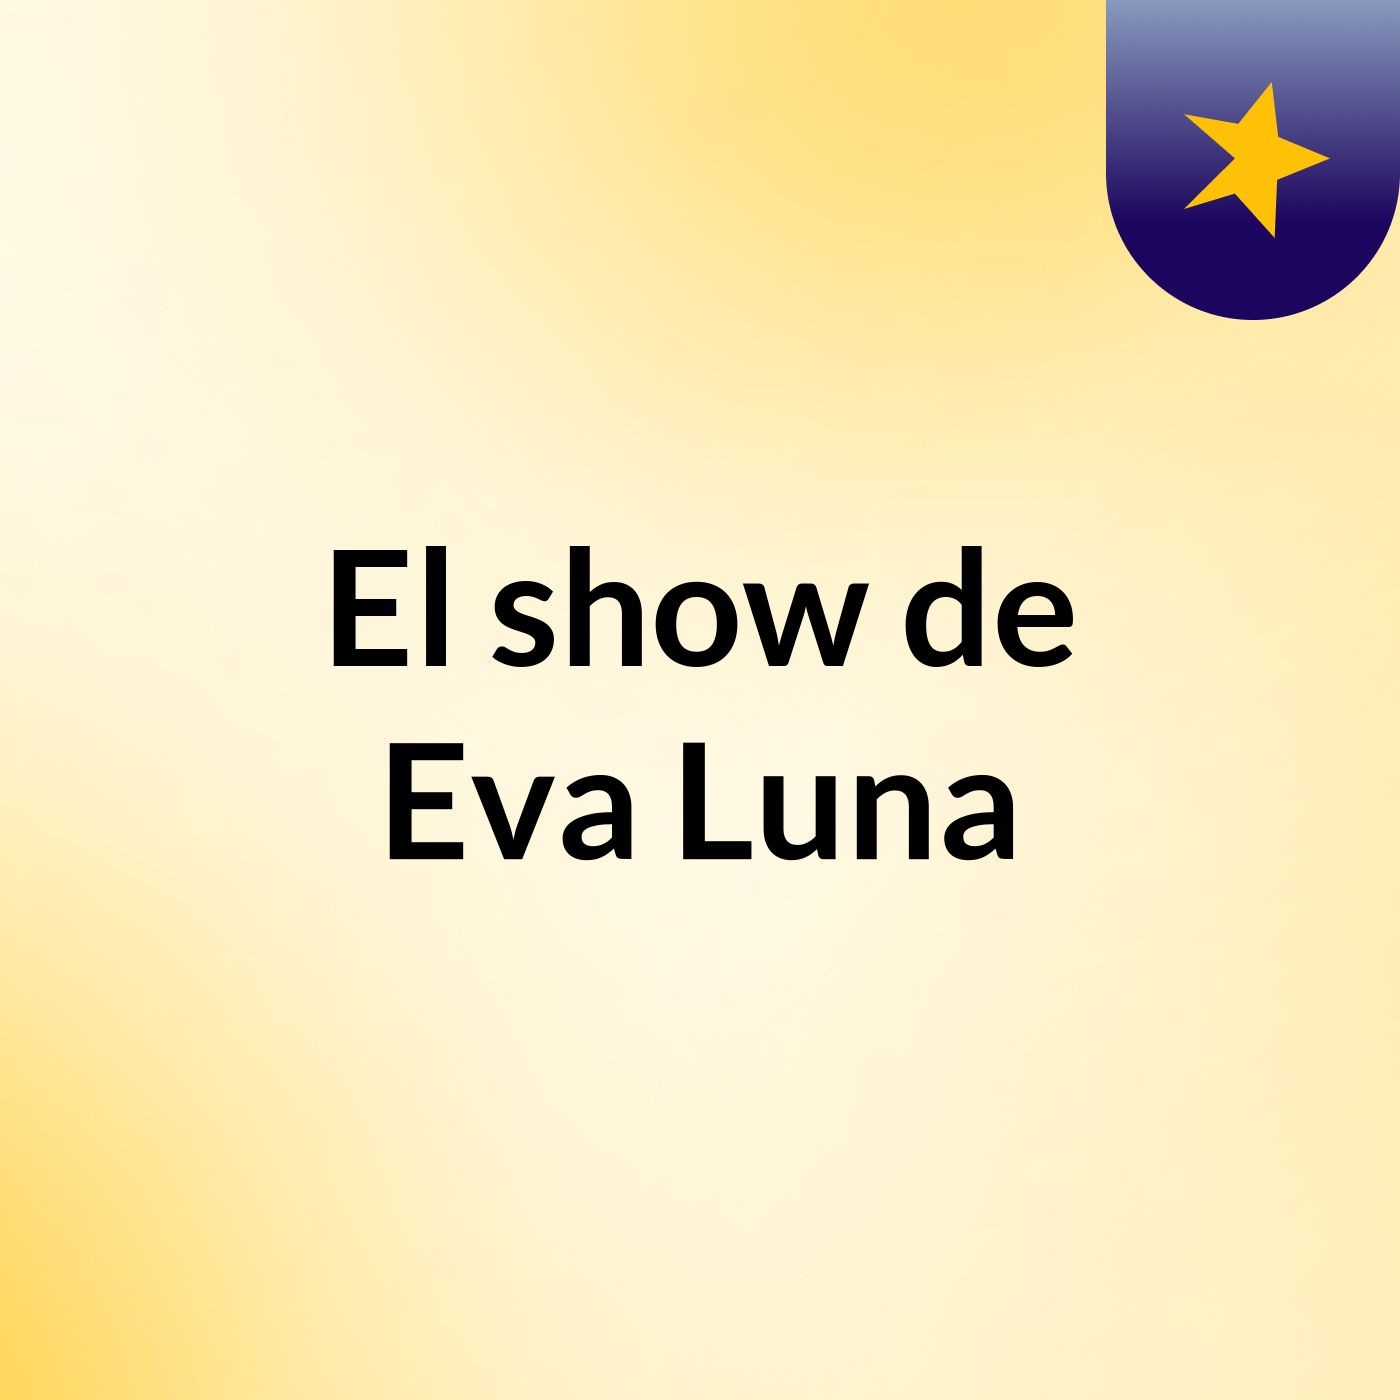 El show de Eva Luna